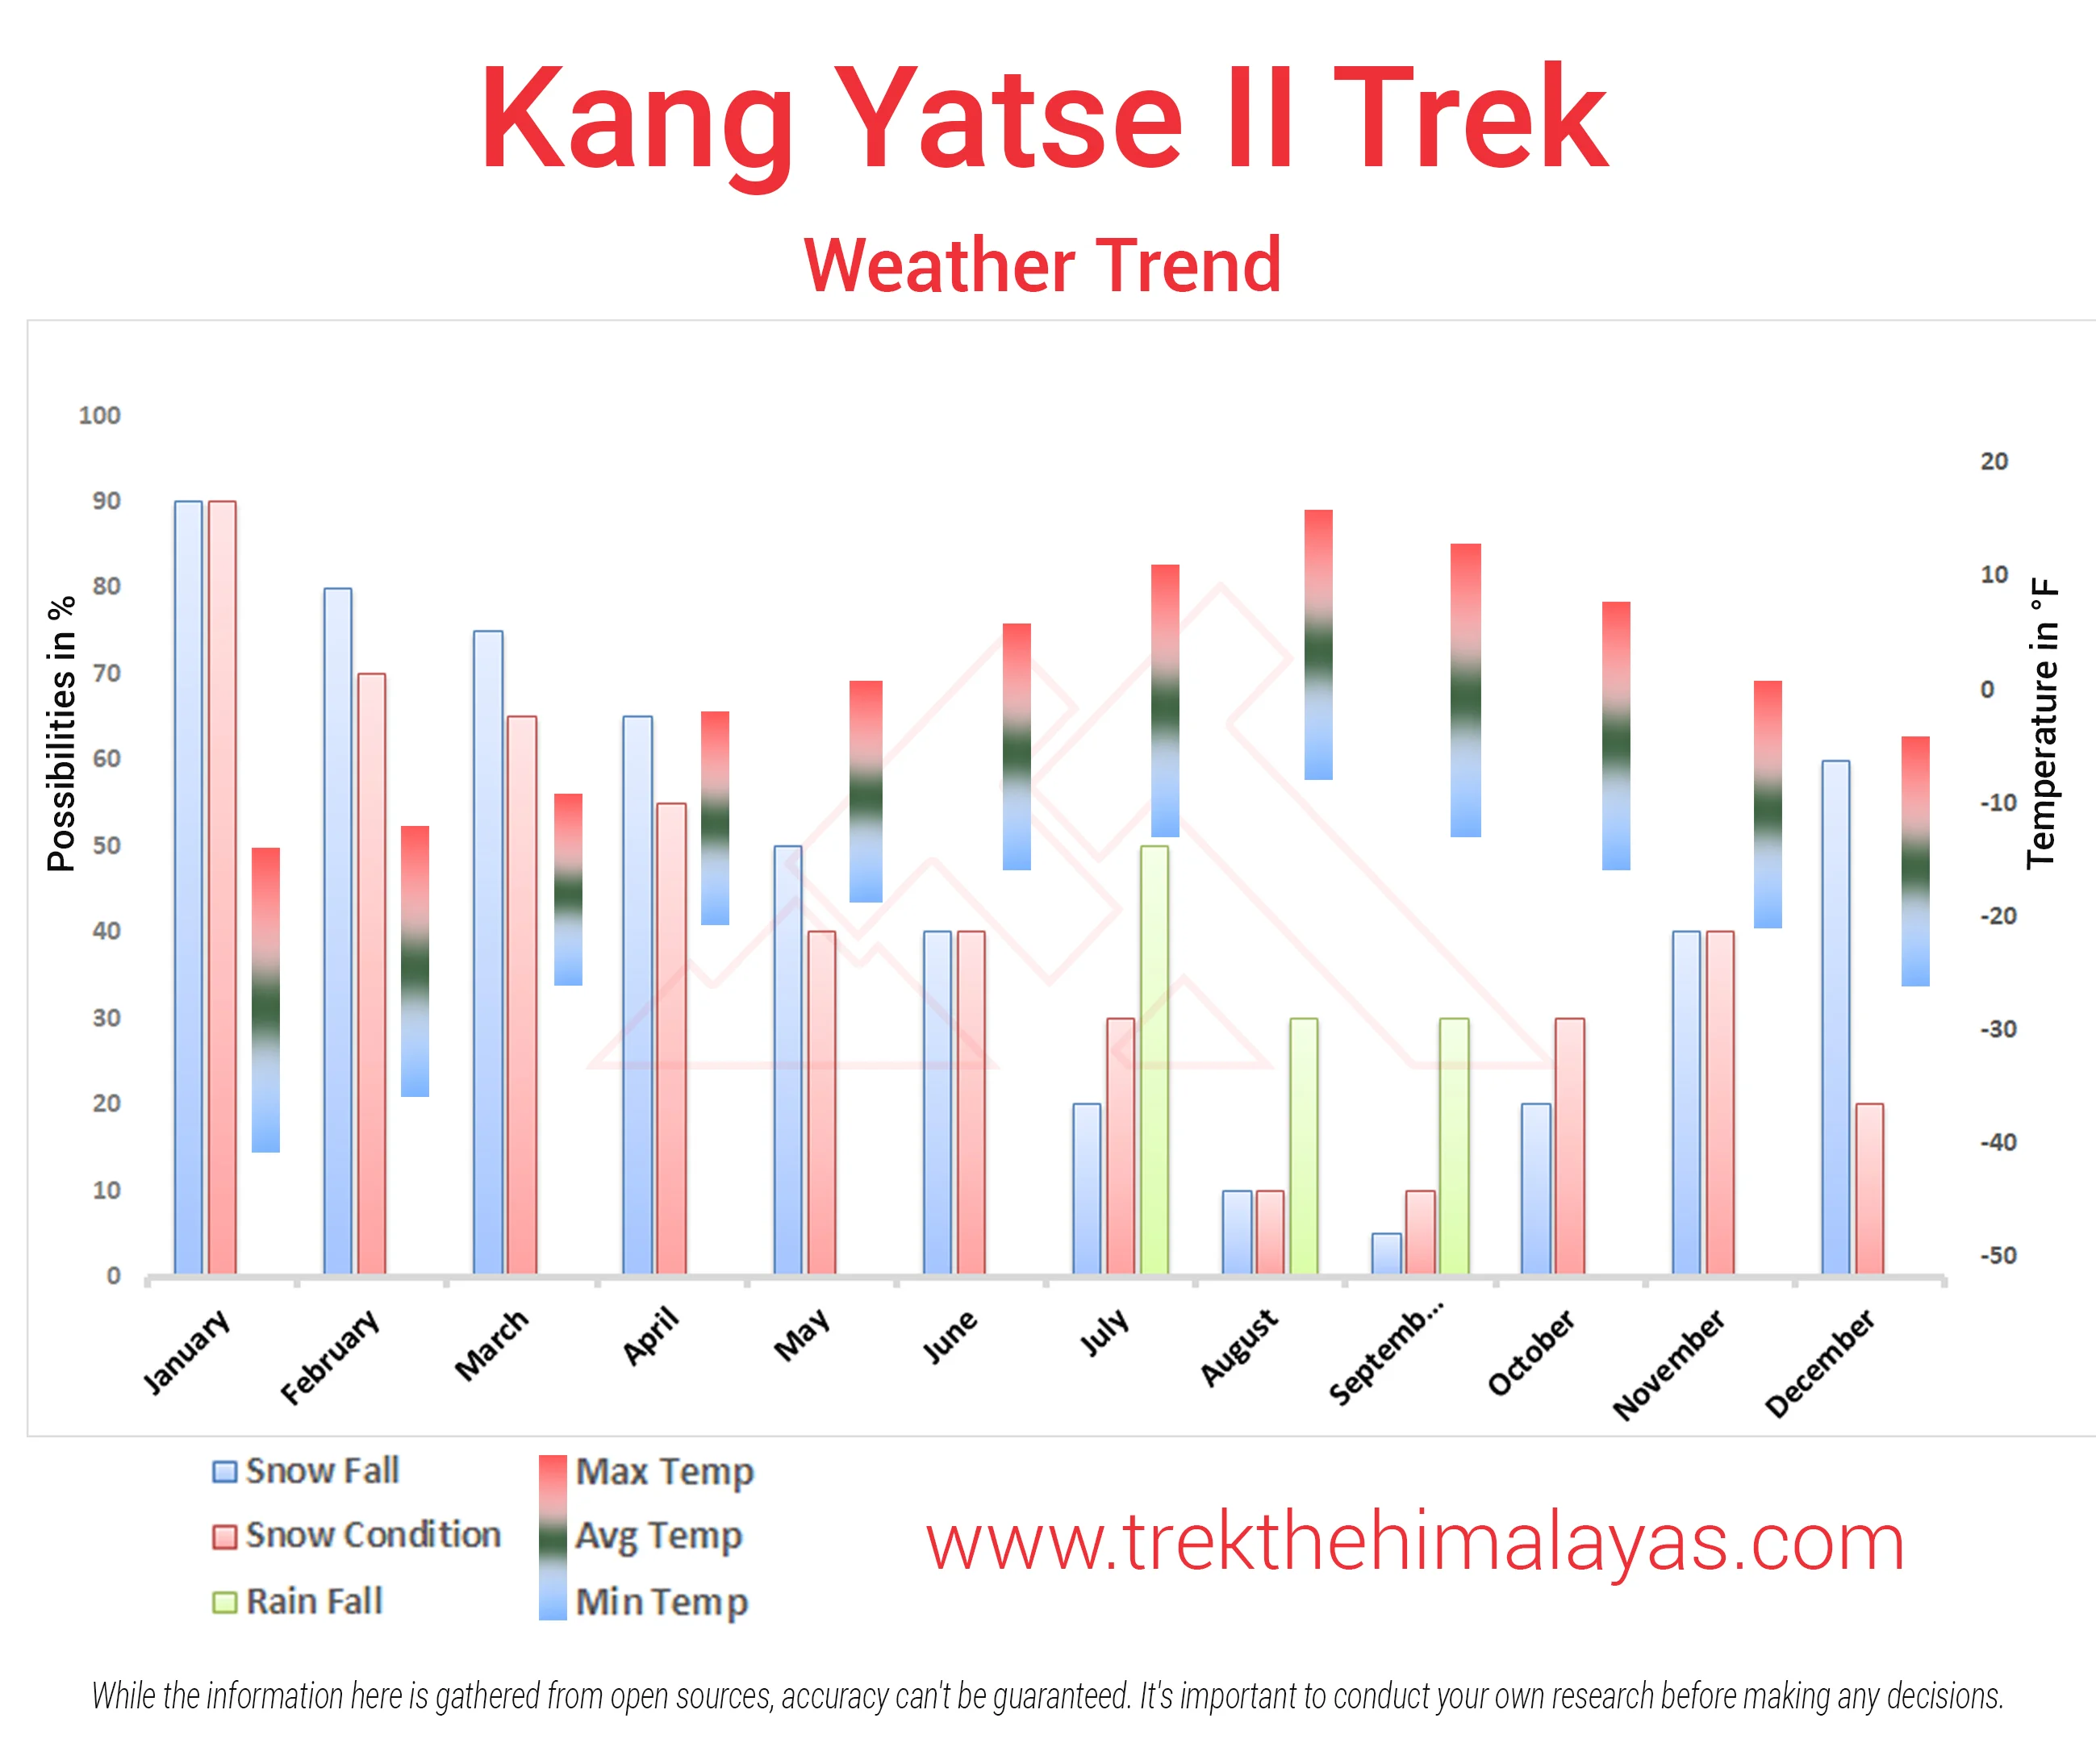 Kang Yatse II Peak Trek Expedition Maps